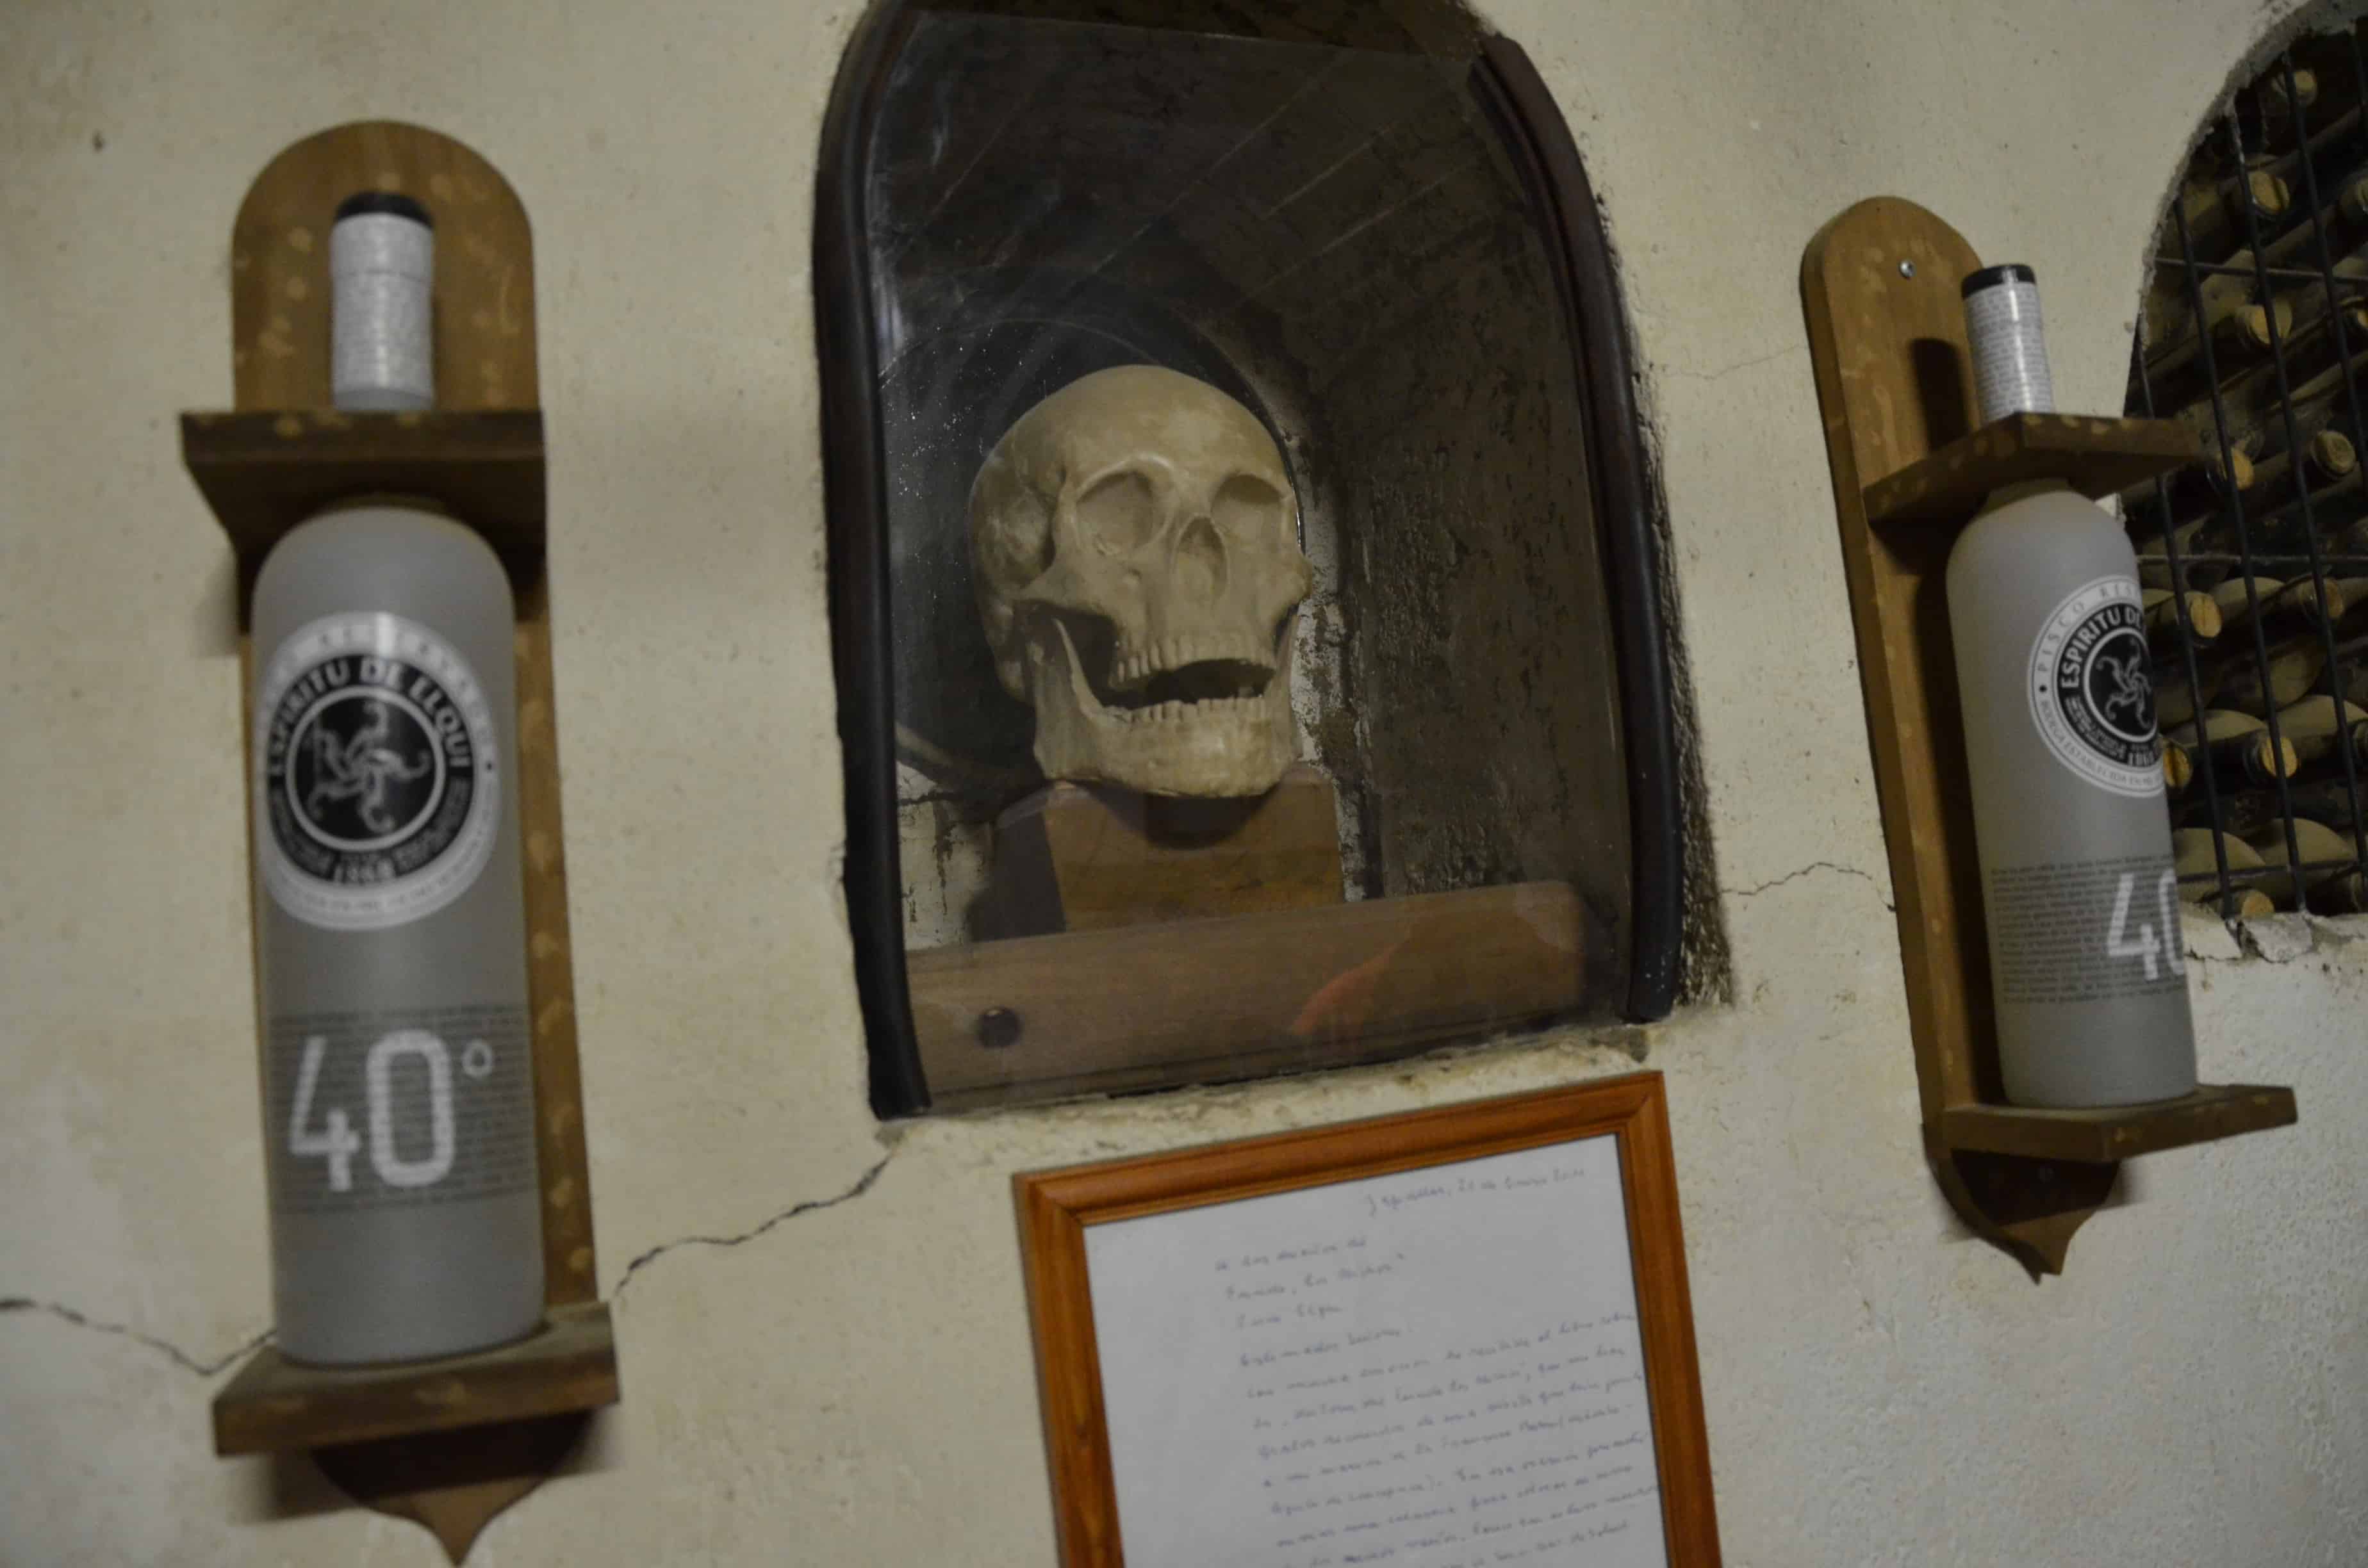 Skull at Los Nichos Distillery in Pisco Elqui, Elqui Valley, Chile